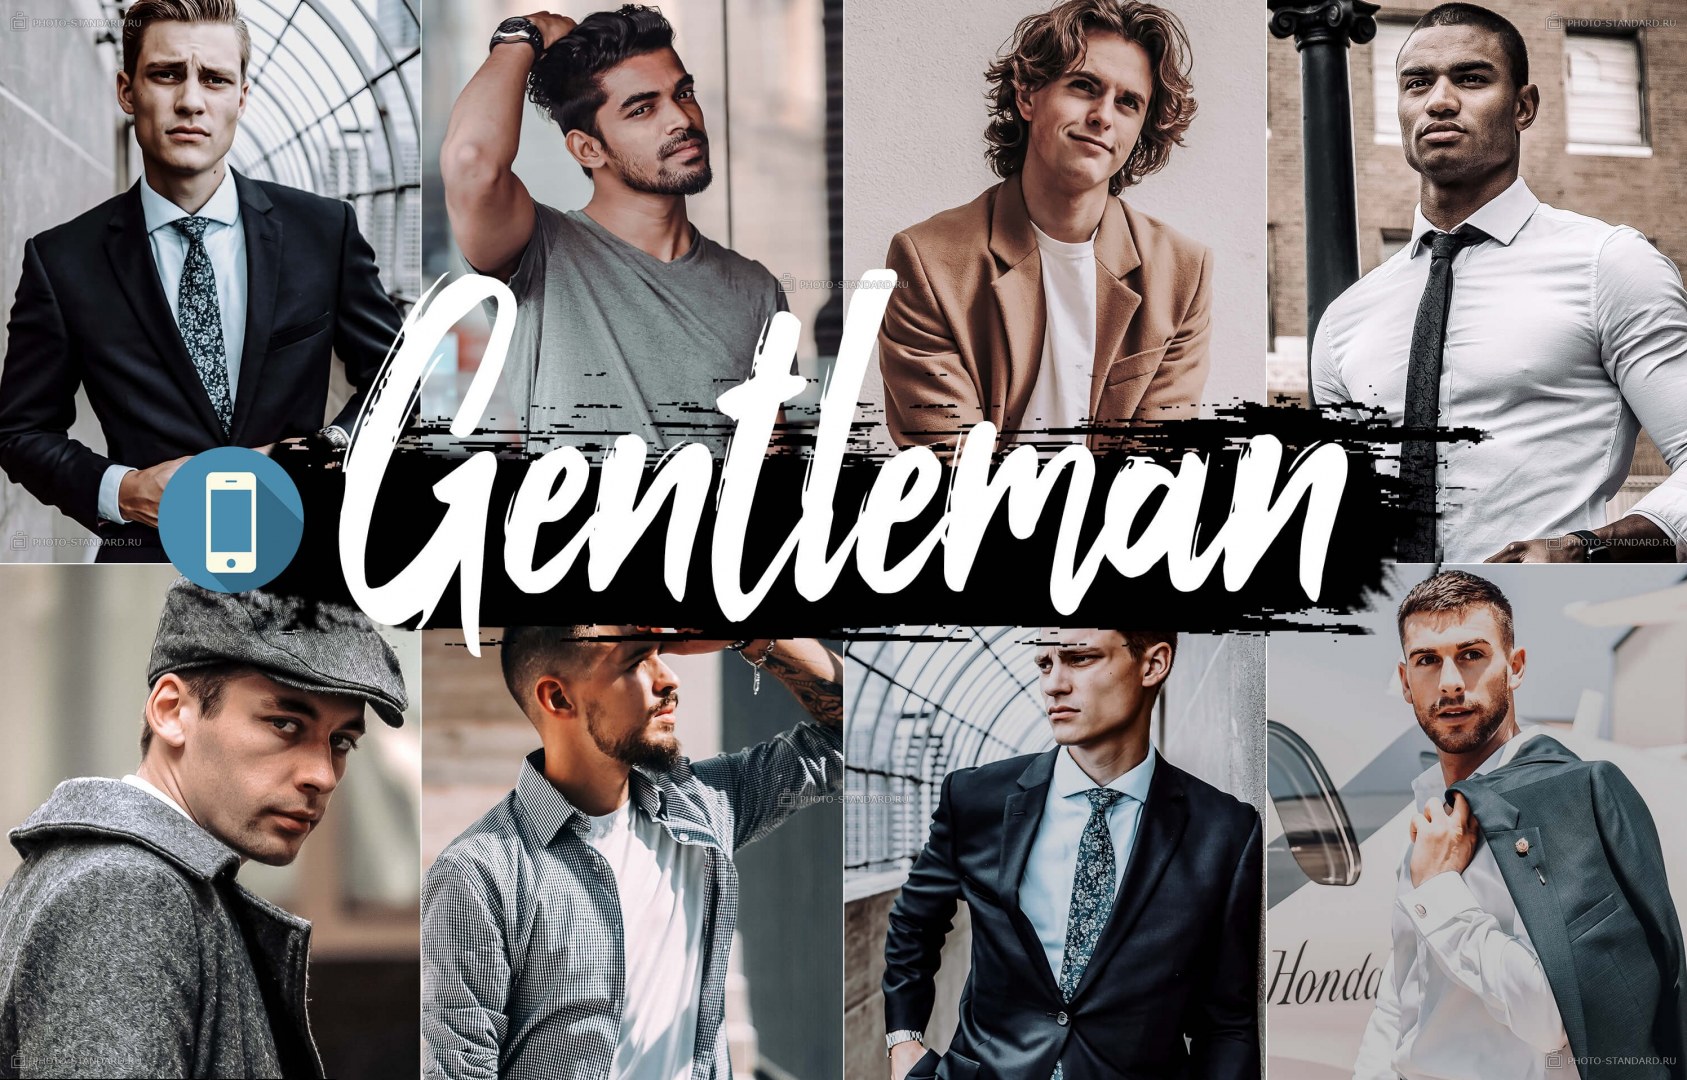 Gentleman 5. Пресеты для мужчин. Мужские пресеты для лайтрум. 5 Джентльменов. Пресеты Lightroom для мужского портрета на ПК.